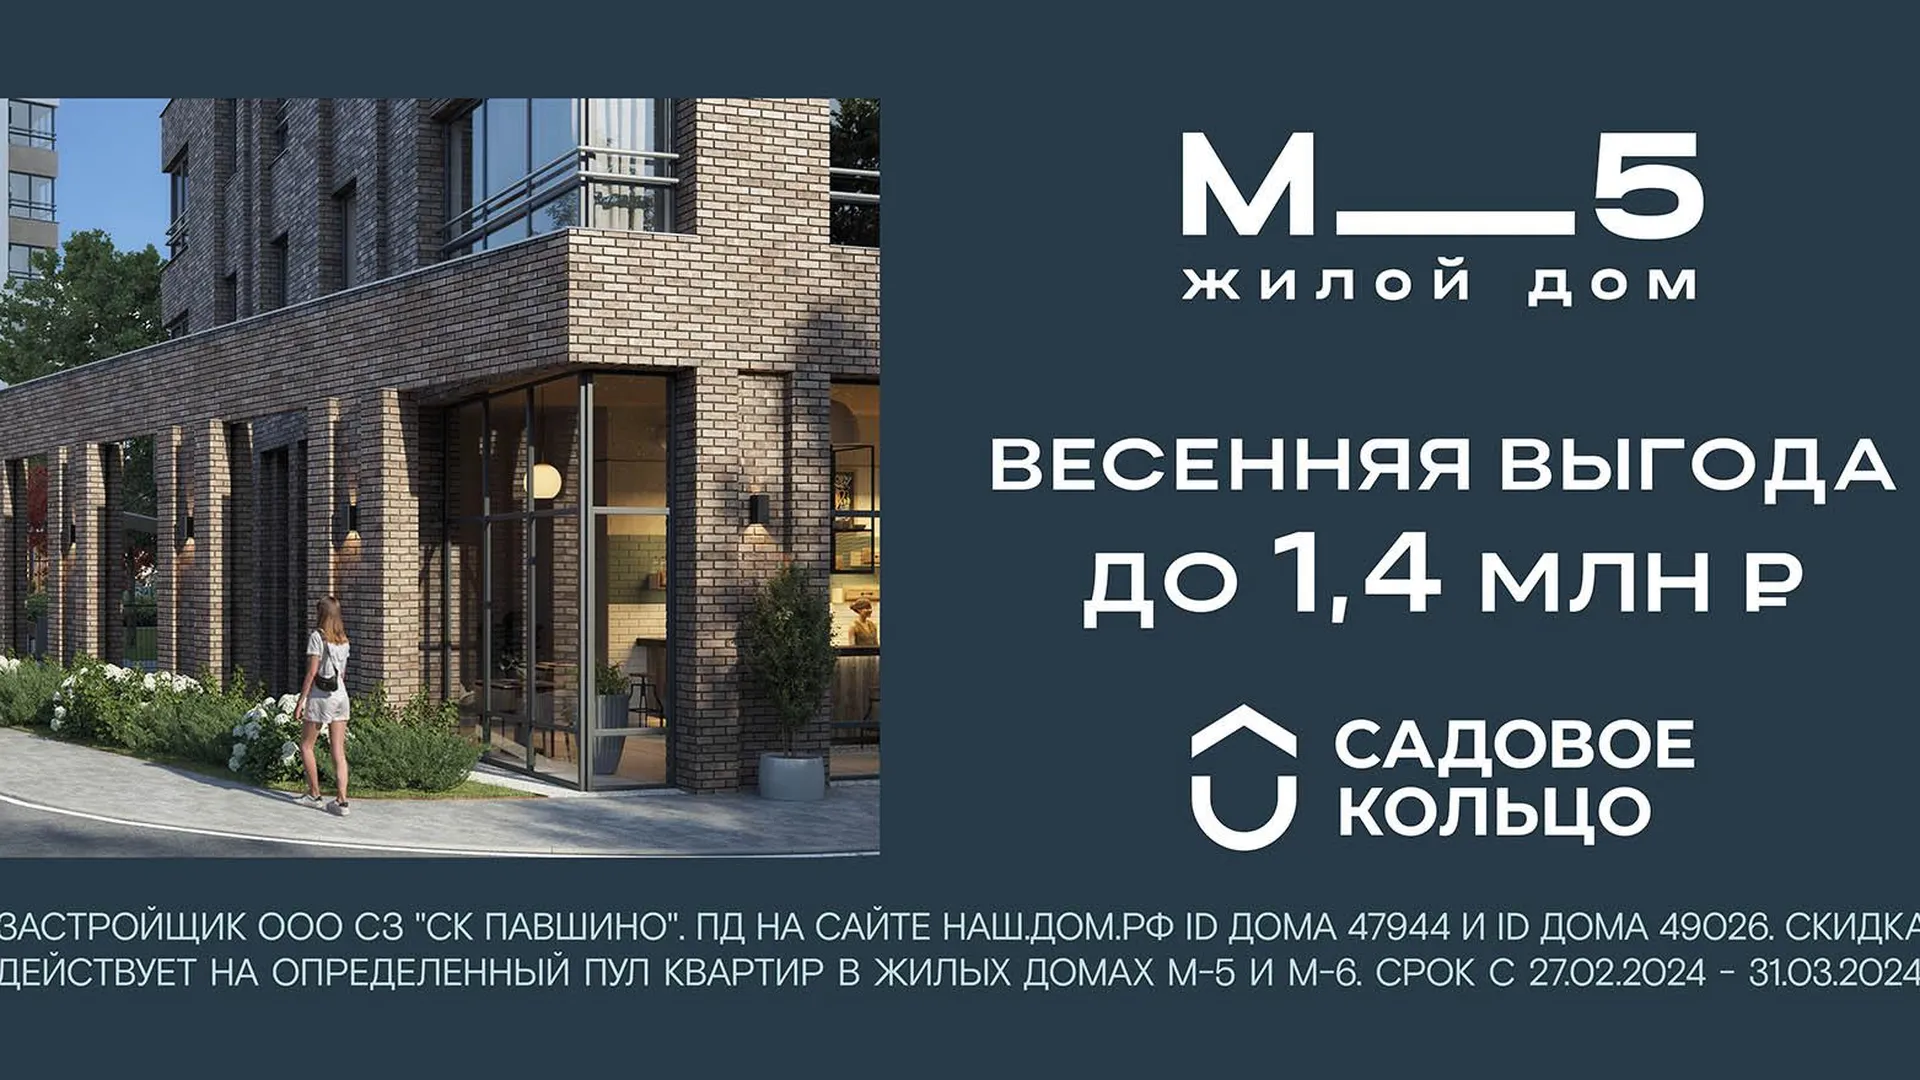 Квартиры в комплексе «М_5» продаются с выгодой до 1,4 млн руб